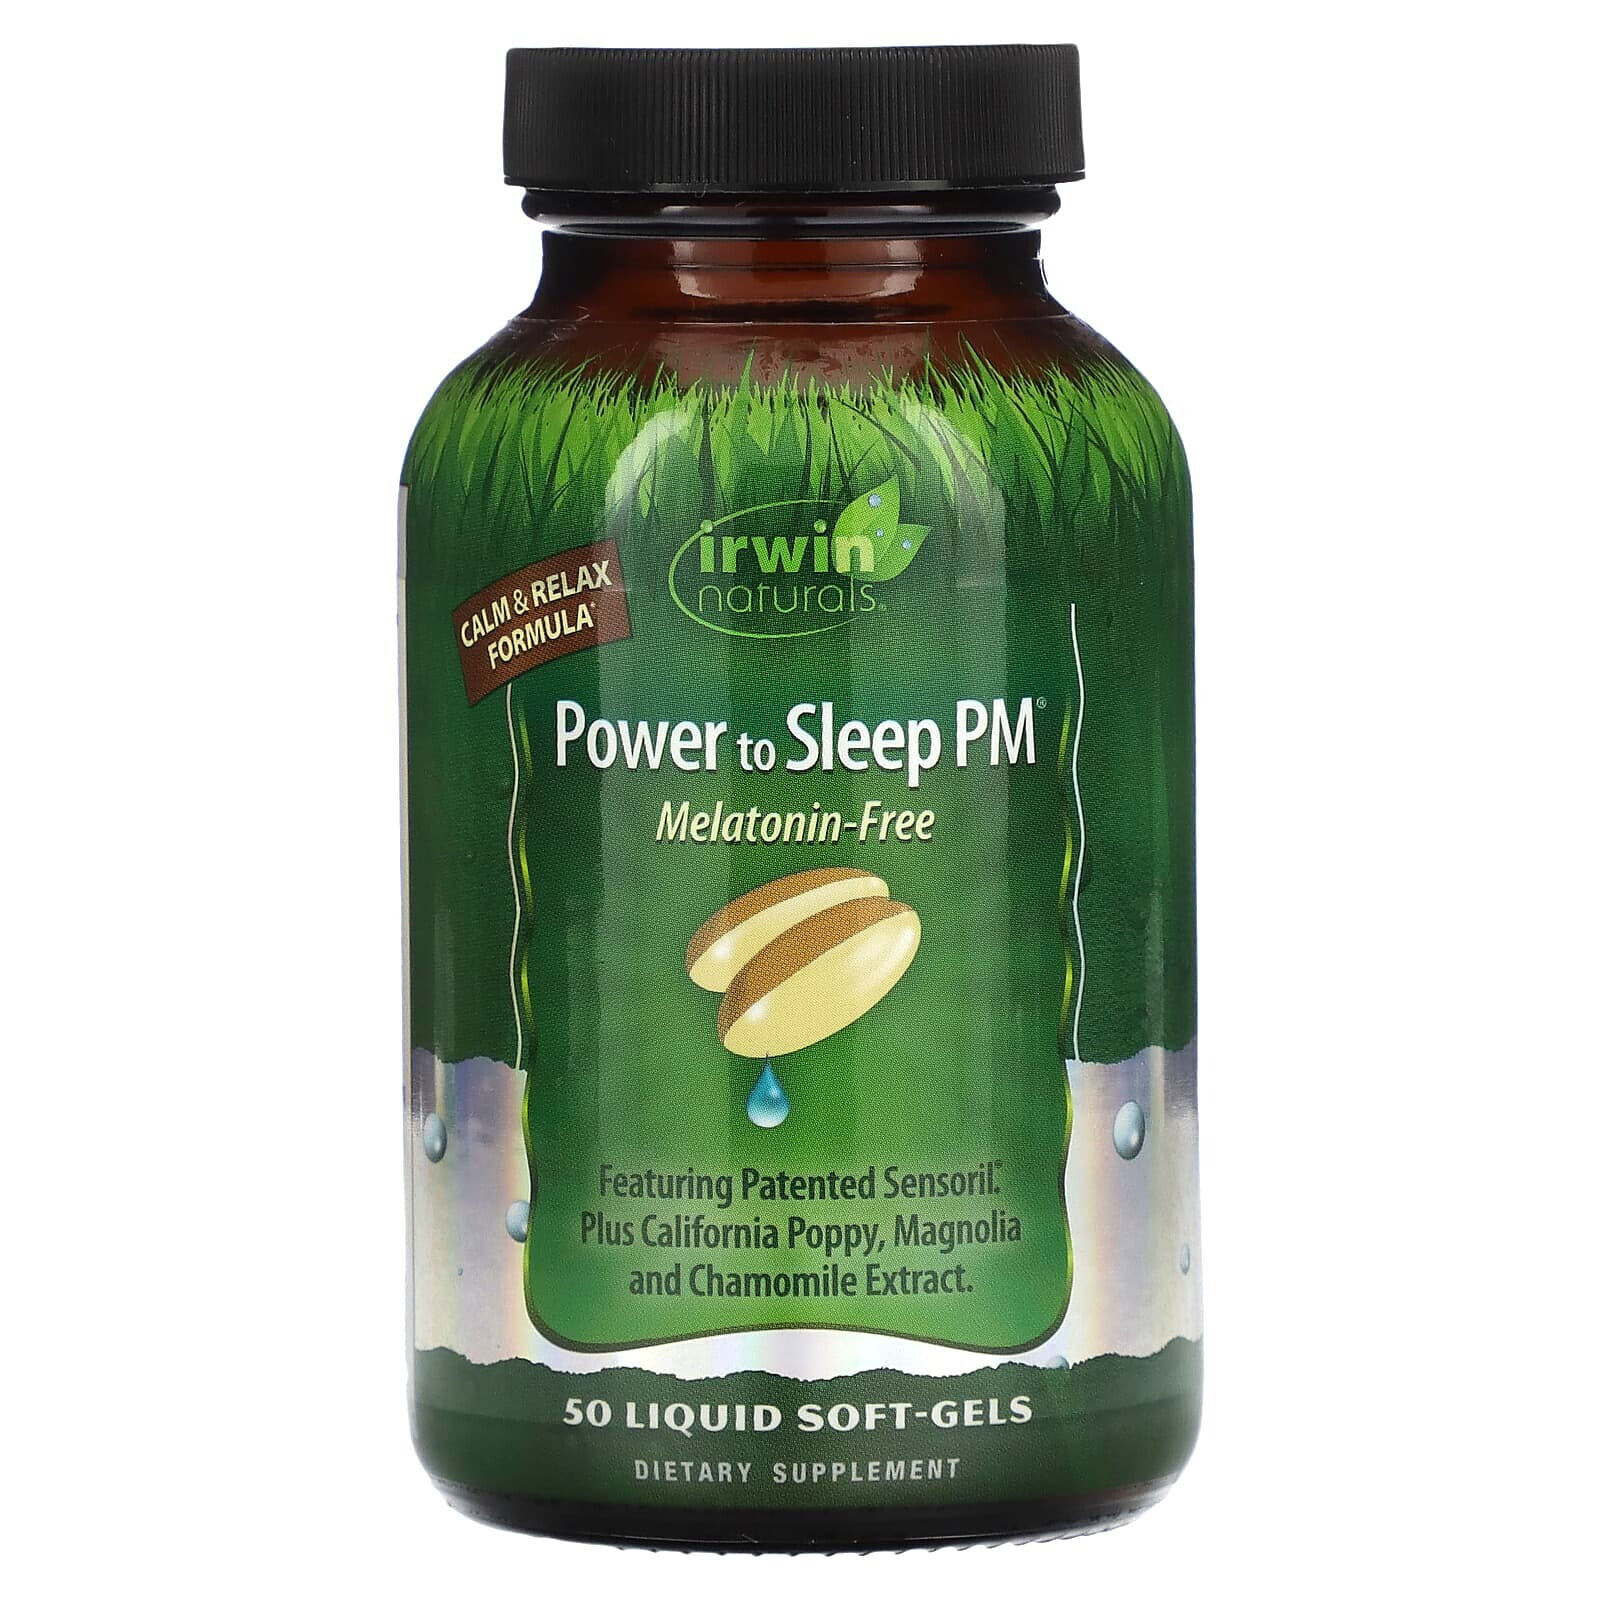 Irwin Naturals, Power to Sleep PM, Melatonin-Free, 50 Liquid Soft-Gels